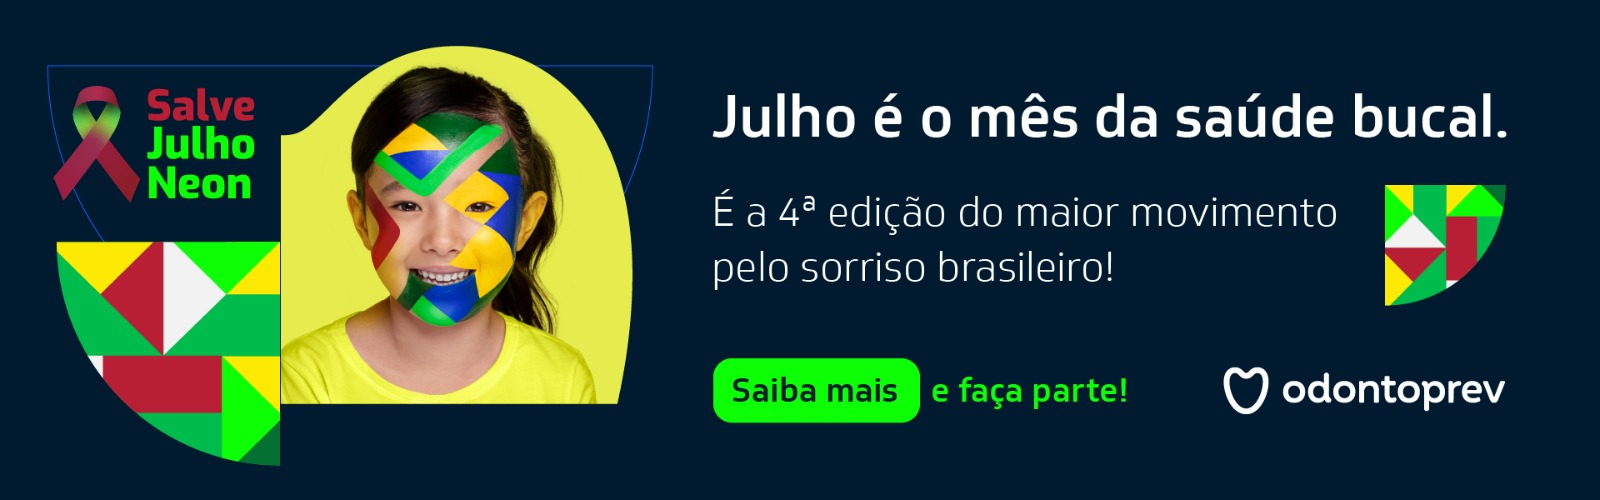 Julho Neon - Salve o sorriso brasileiro